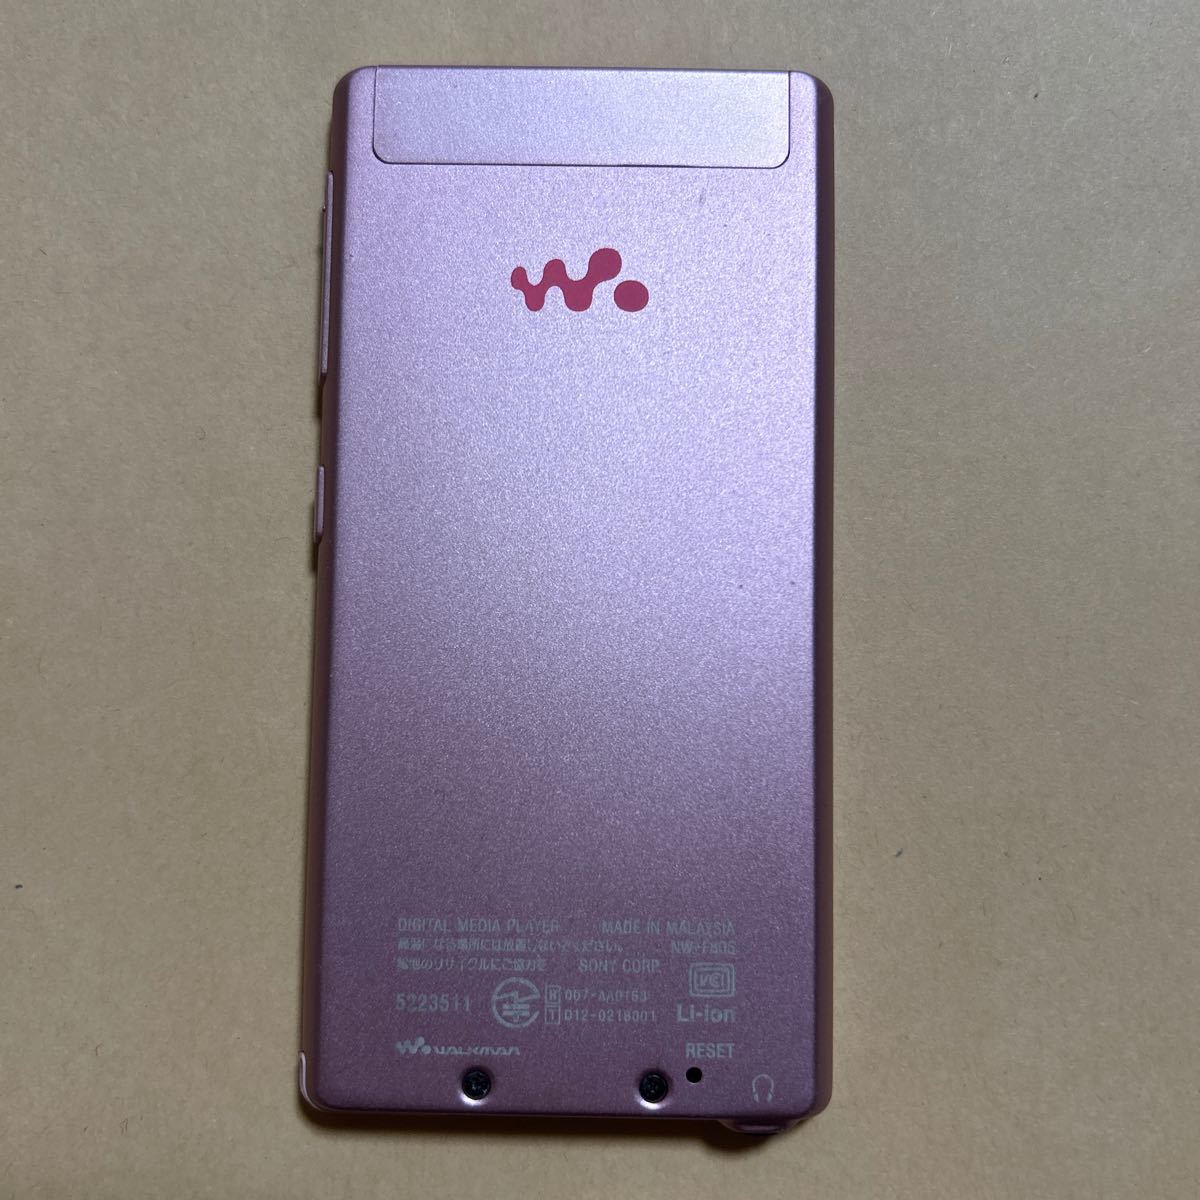 クリーニング済 SONY ソニー ウォークマン 16GB NW-F805 Bluetooth ノイズキャンセリングイヤホン対応 WALKMAN 音楽プレーヤー_画像2